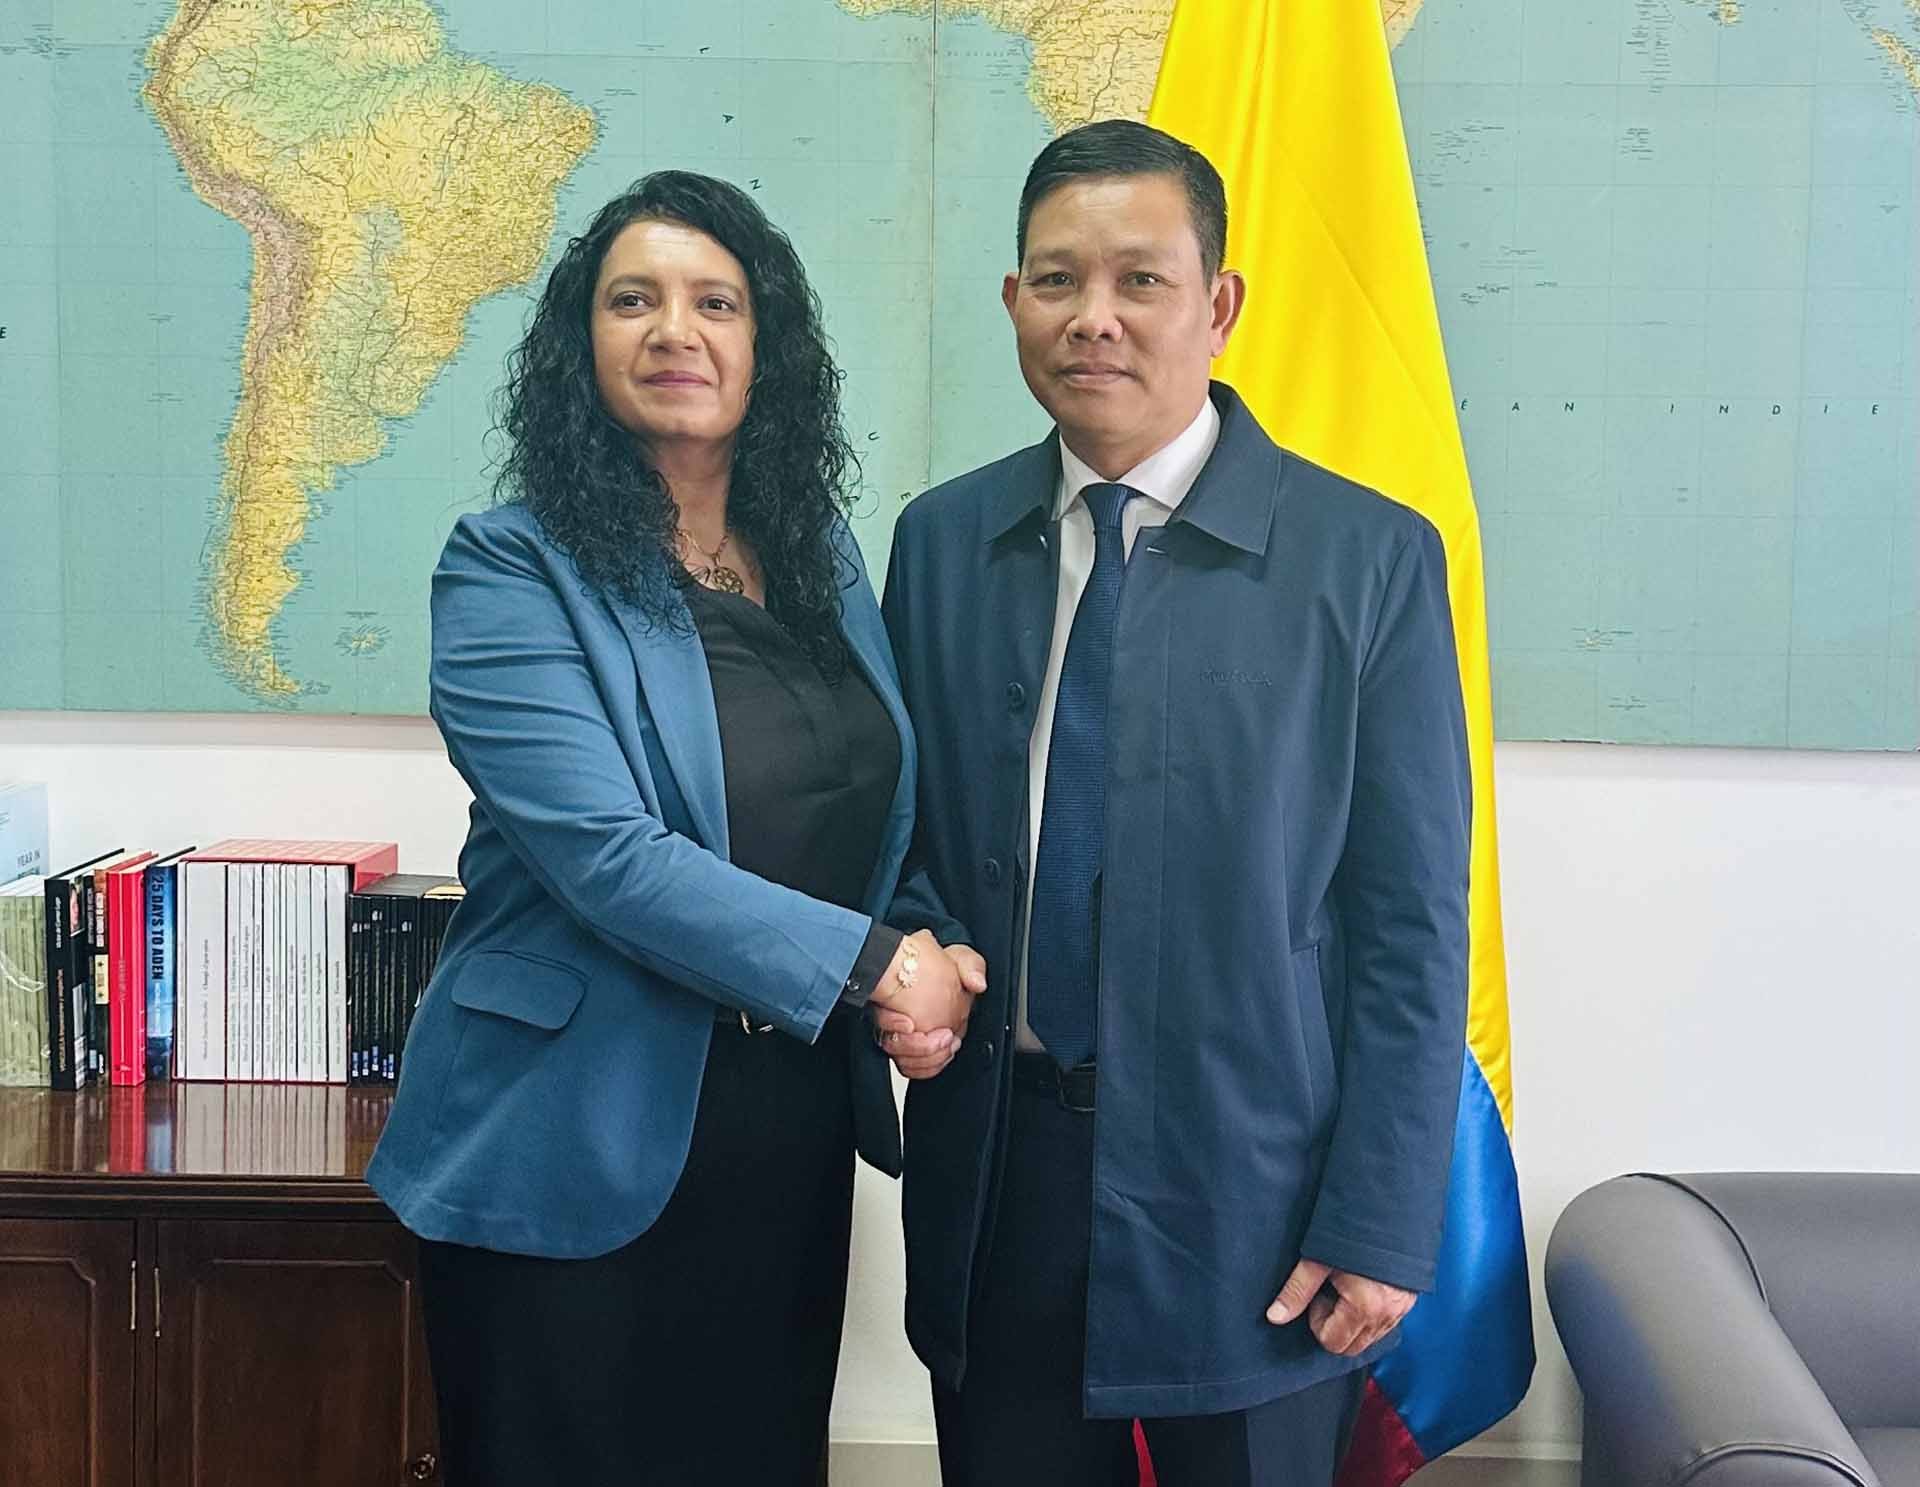 Quốc hội Colombia mong muốn thúc đẩy quan hệ với Việt Nam